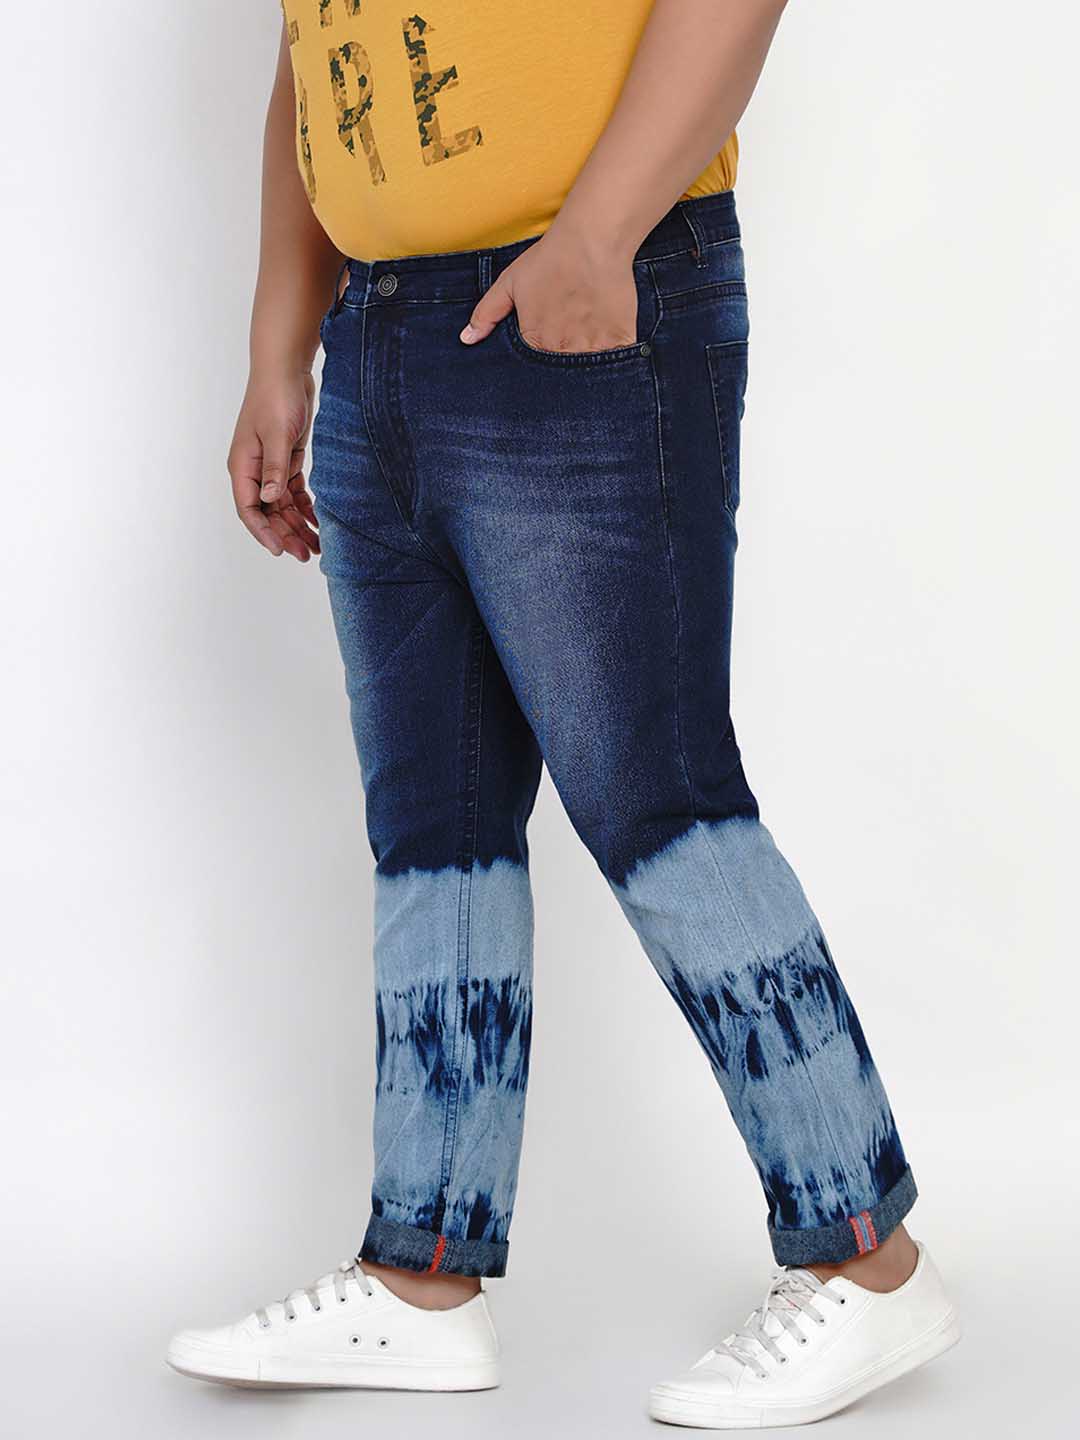 bottomwear/jeans/JPJ6005/jpj6005-3.jpg